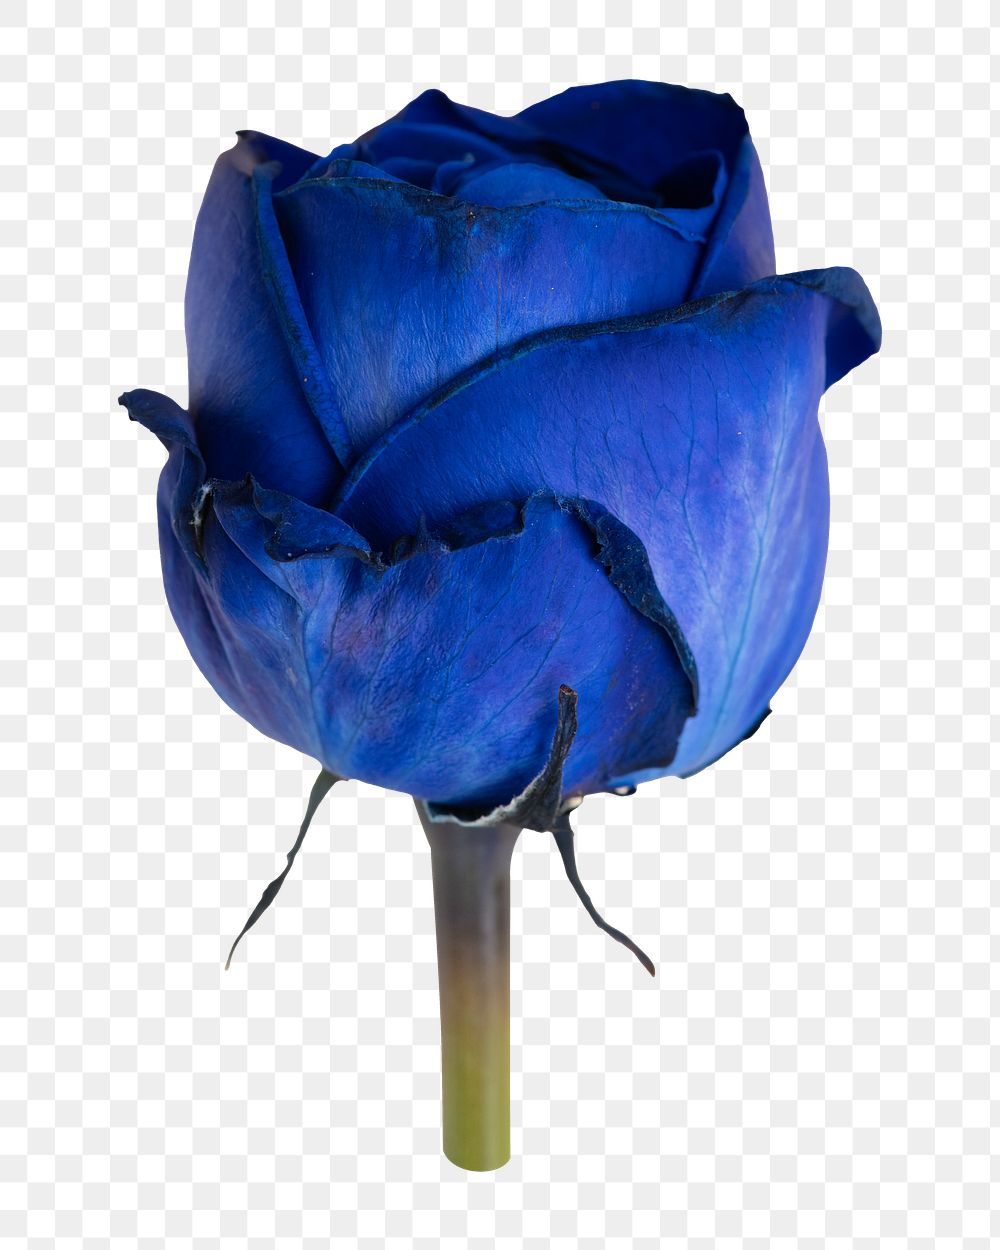 Blue rose png flower sticker, transparent background